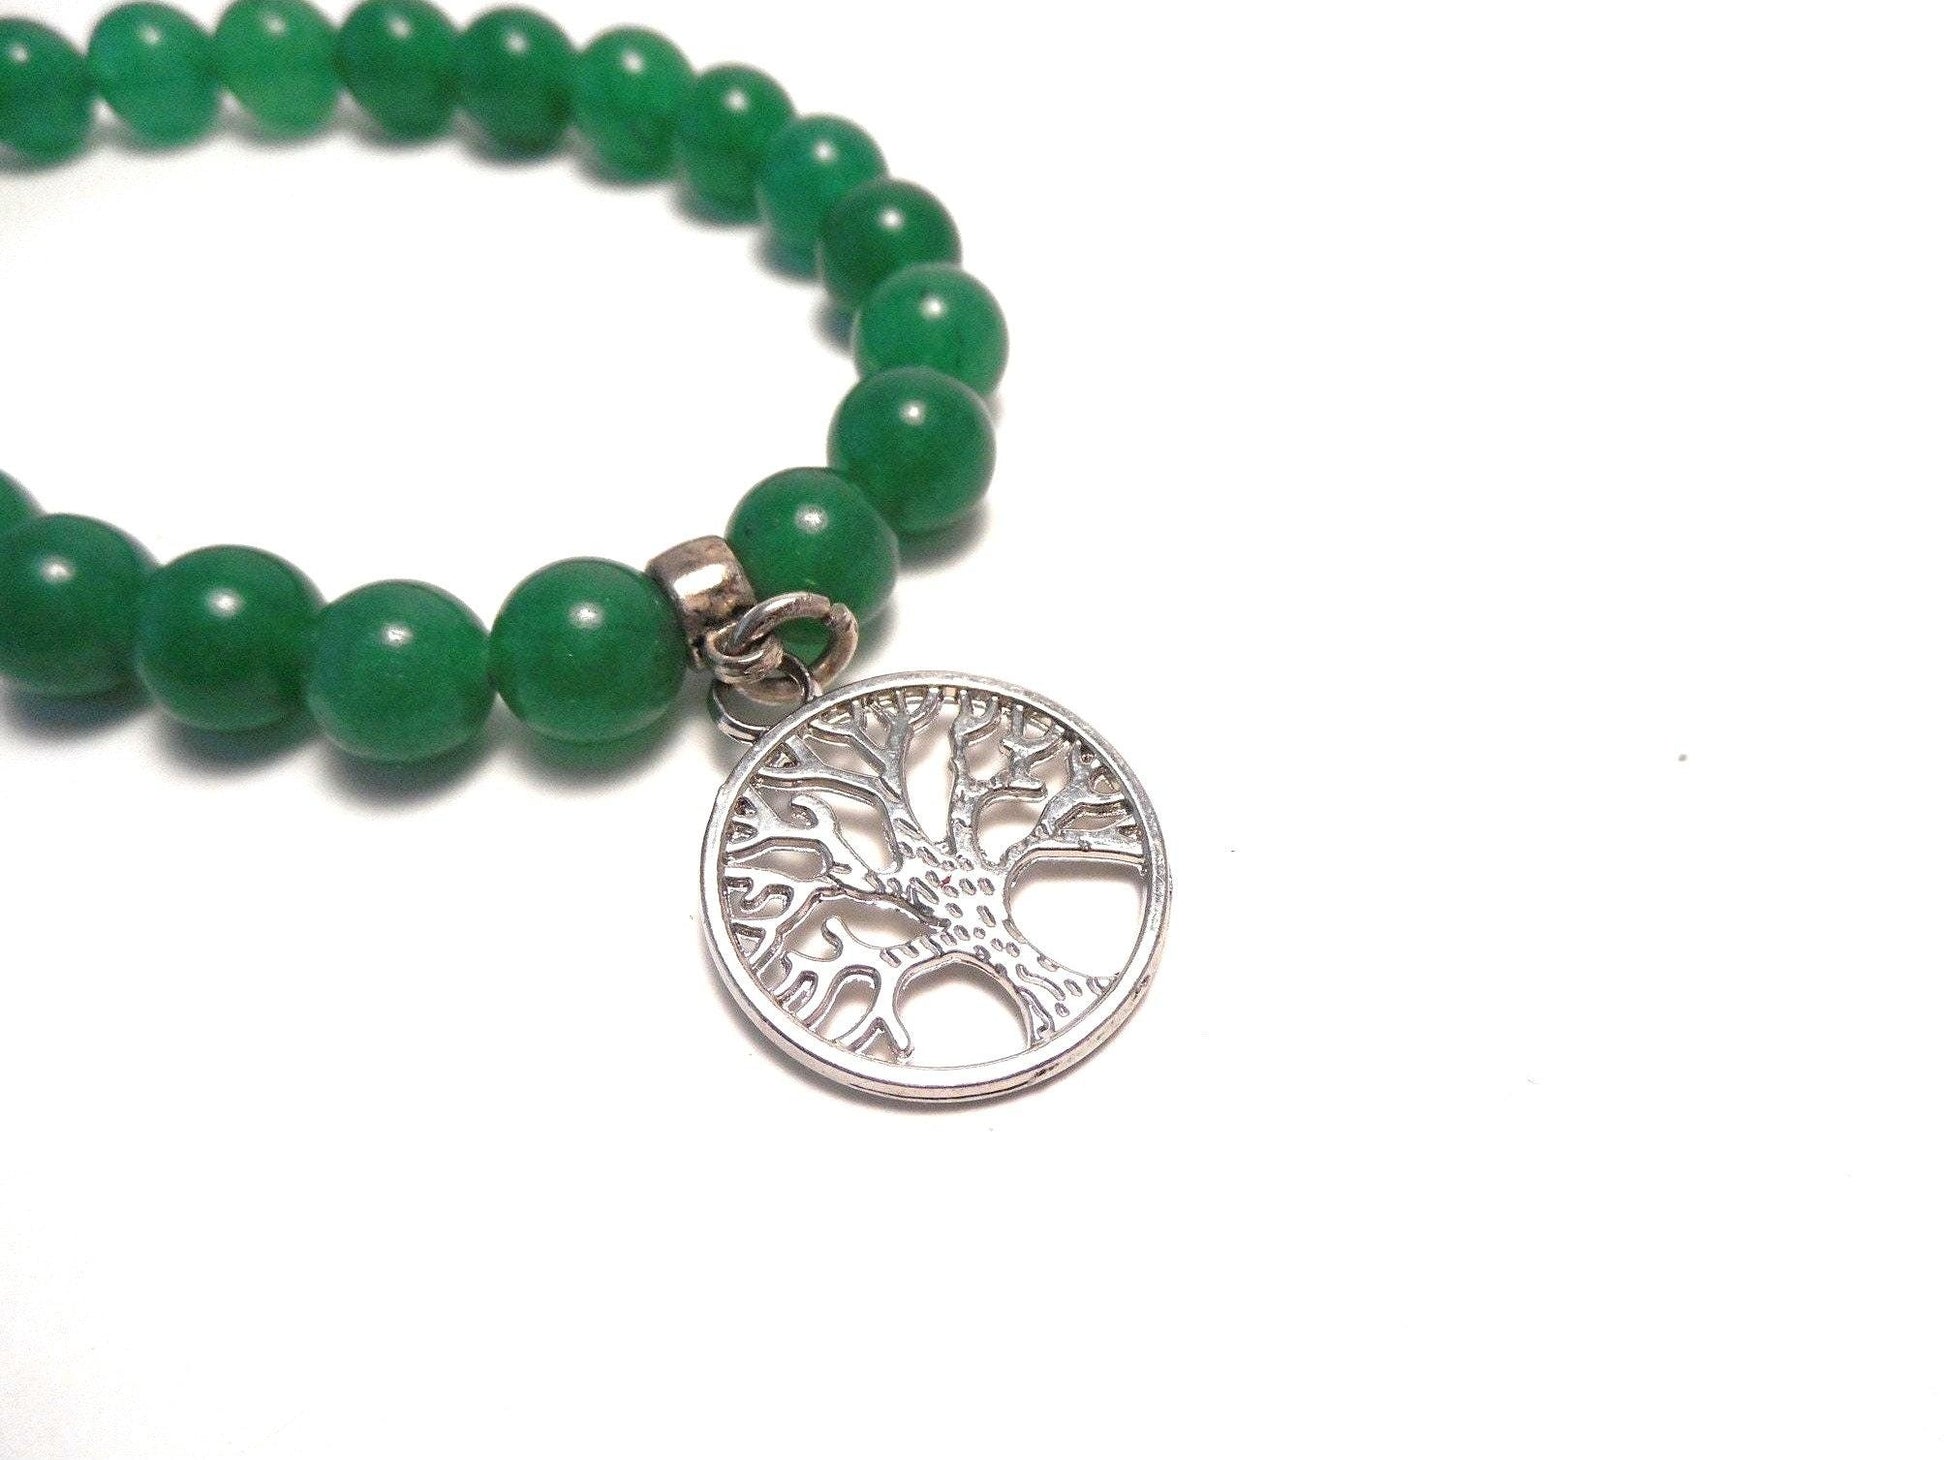 Pulsera verde con símbolos celtas